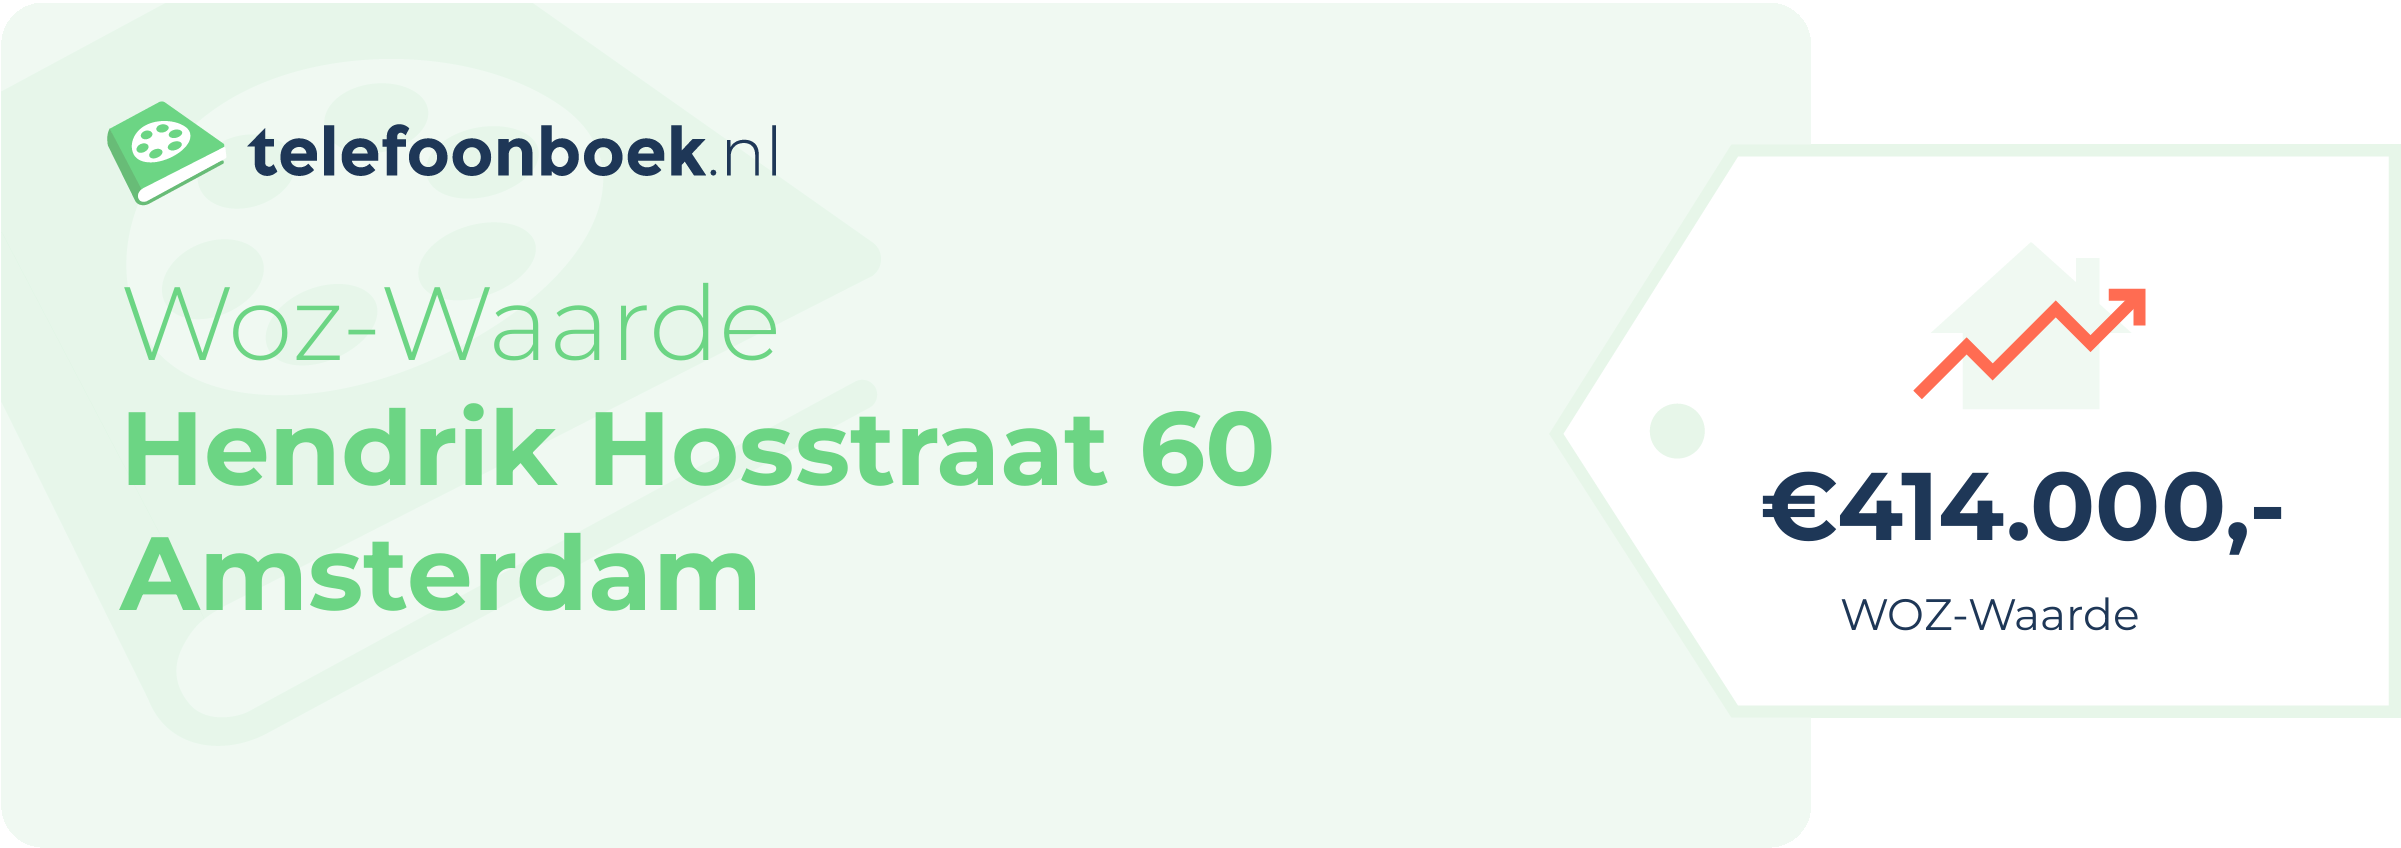 WOZ-waarde Hendrik Hosstraat 60 Amsterdam